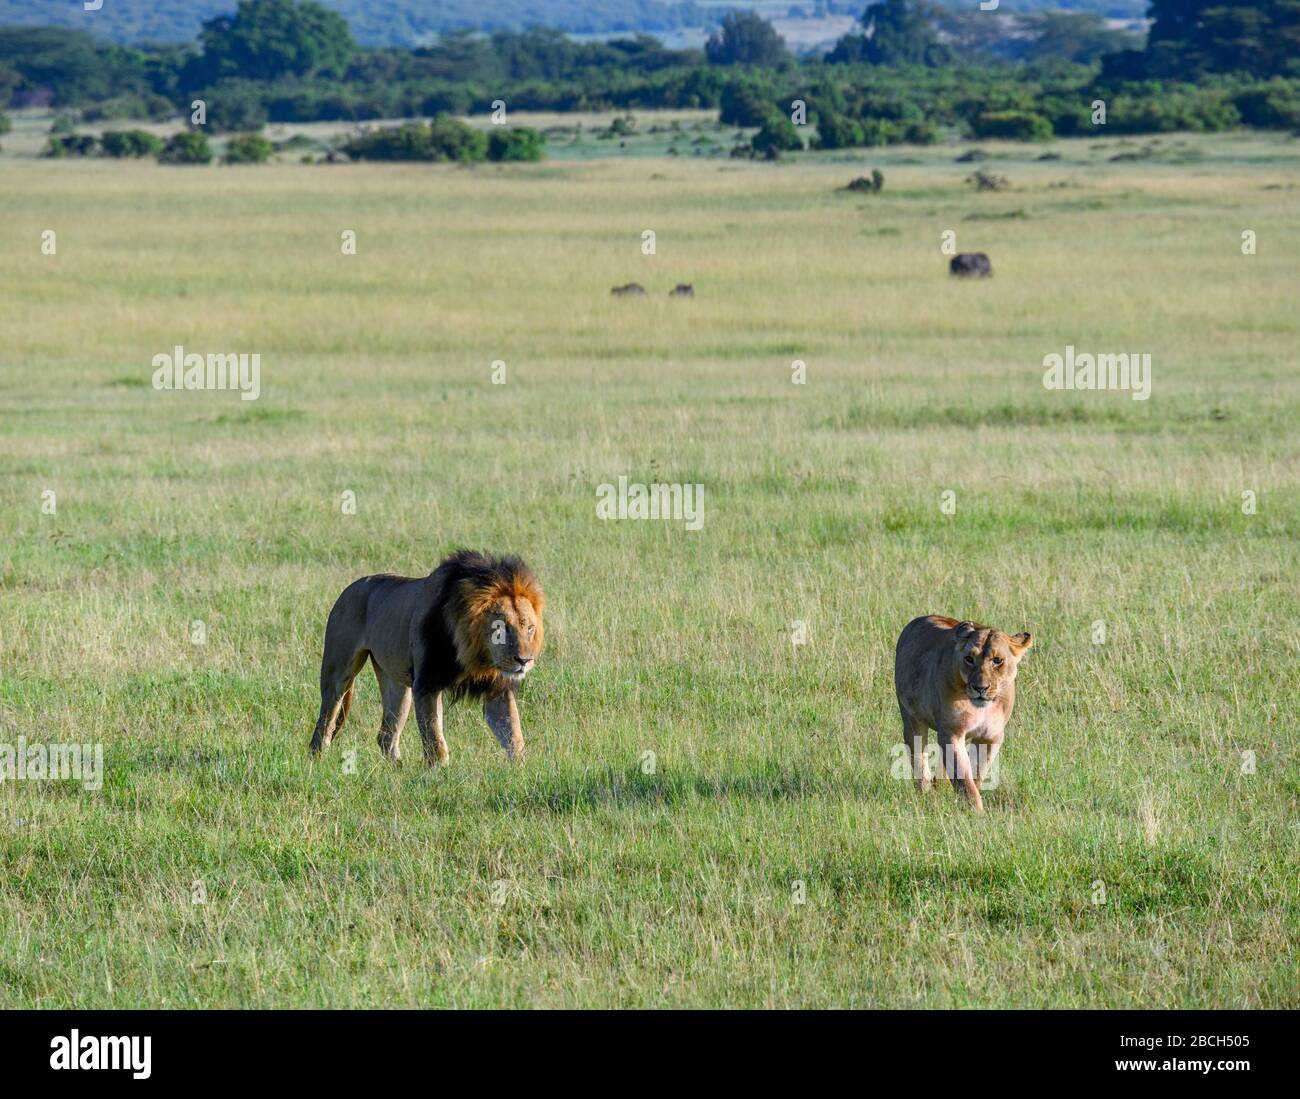 Lion (Panthera leo). Lion et lioness marchant sur des prairies ouvertes, réserve nationale de Masai Mara, Kenya, Afrique Banque D'Images